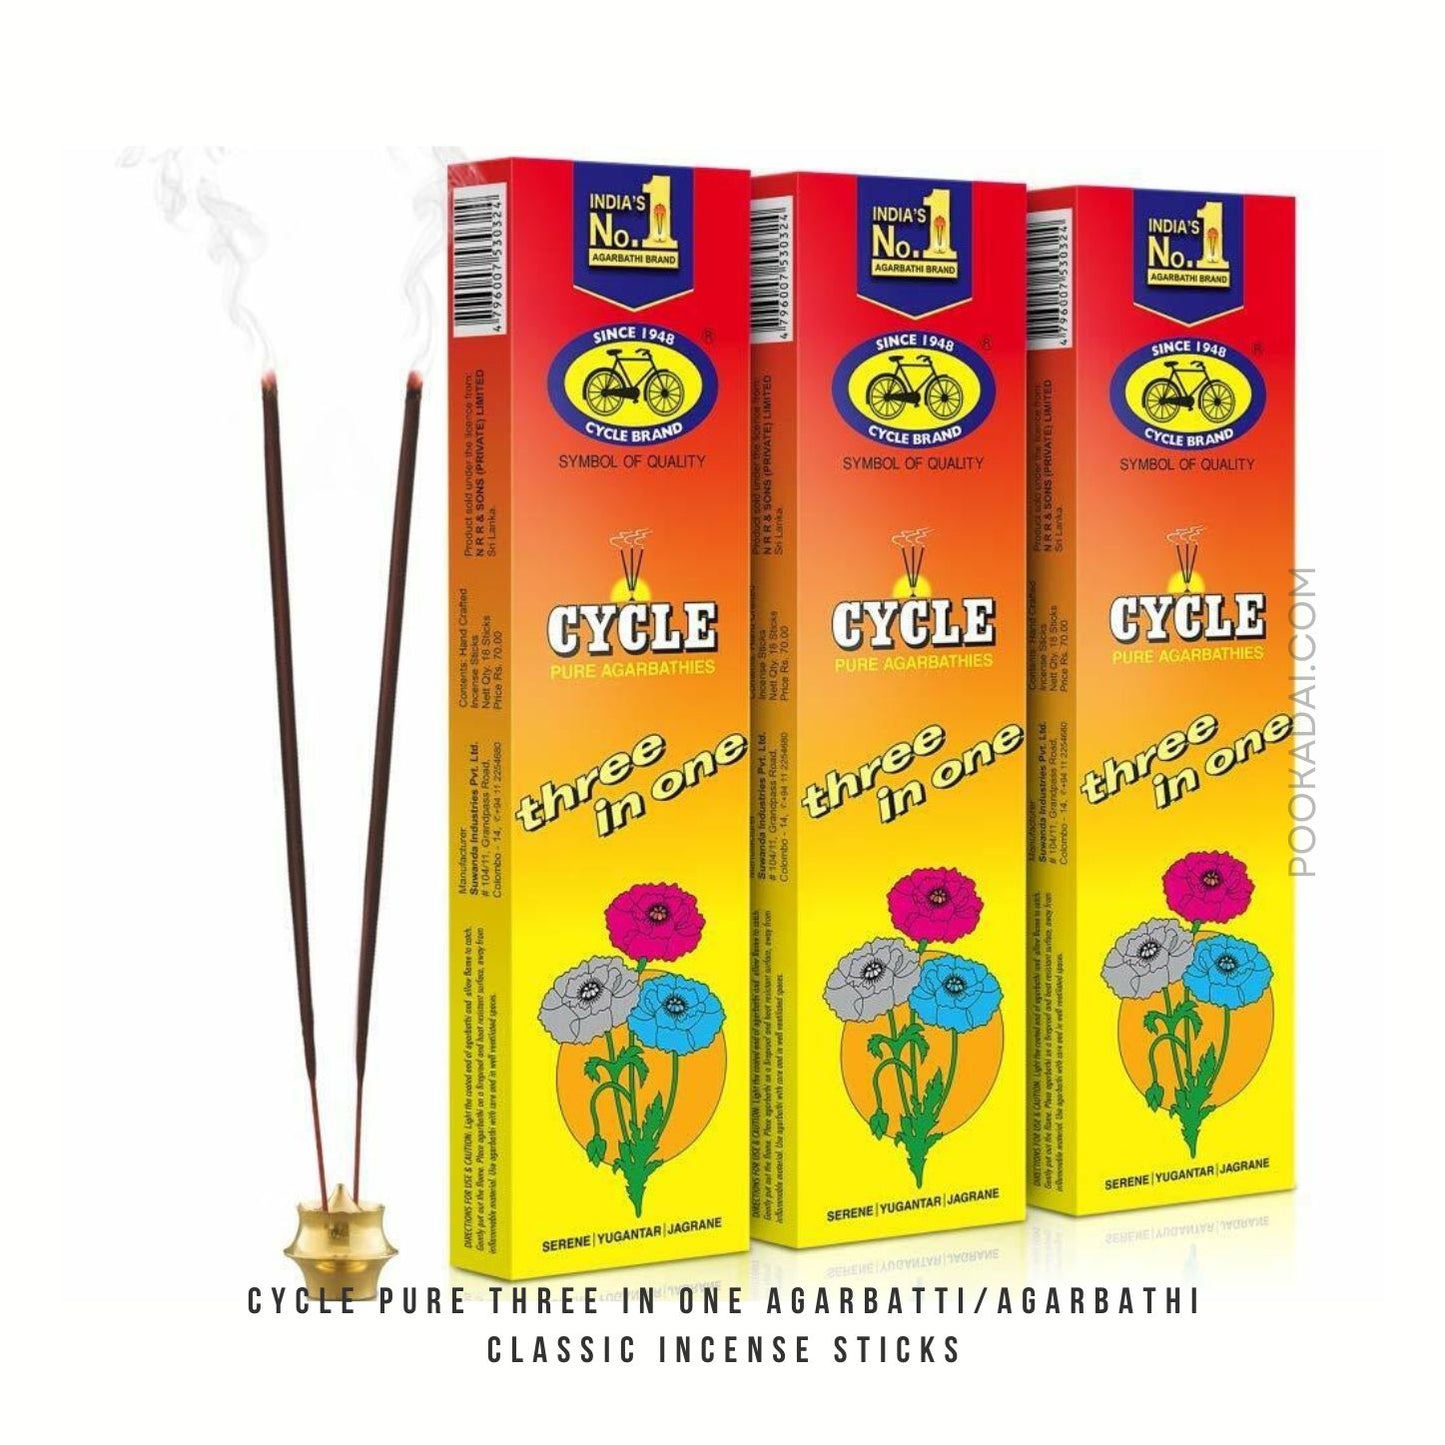 Cycle Pure Three in One Agarbatti/Agarbathi Classic Incense Sticks